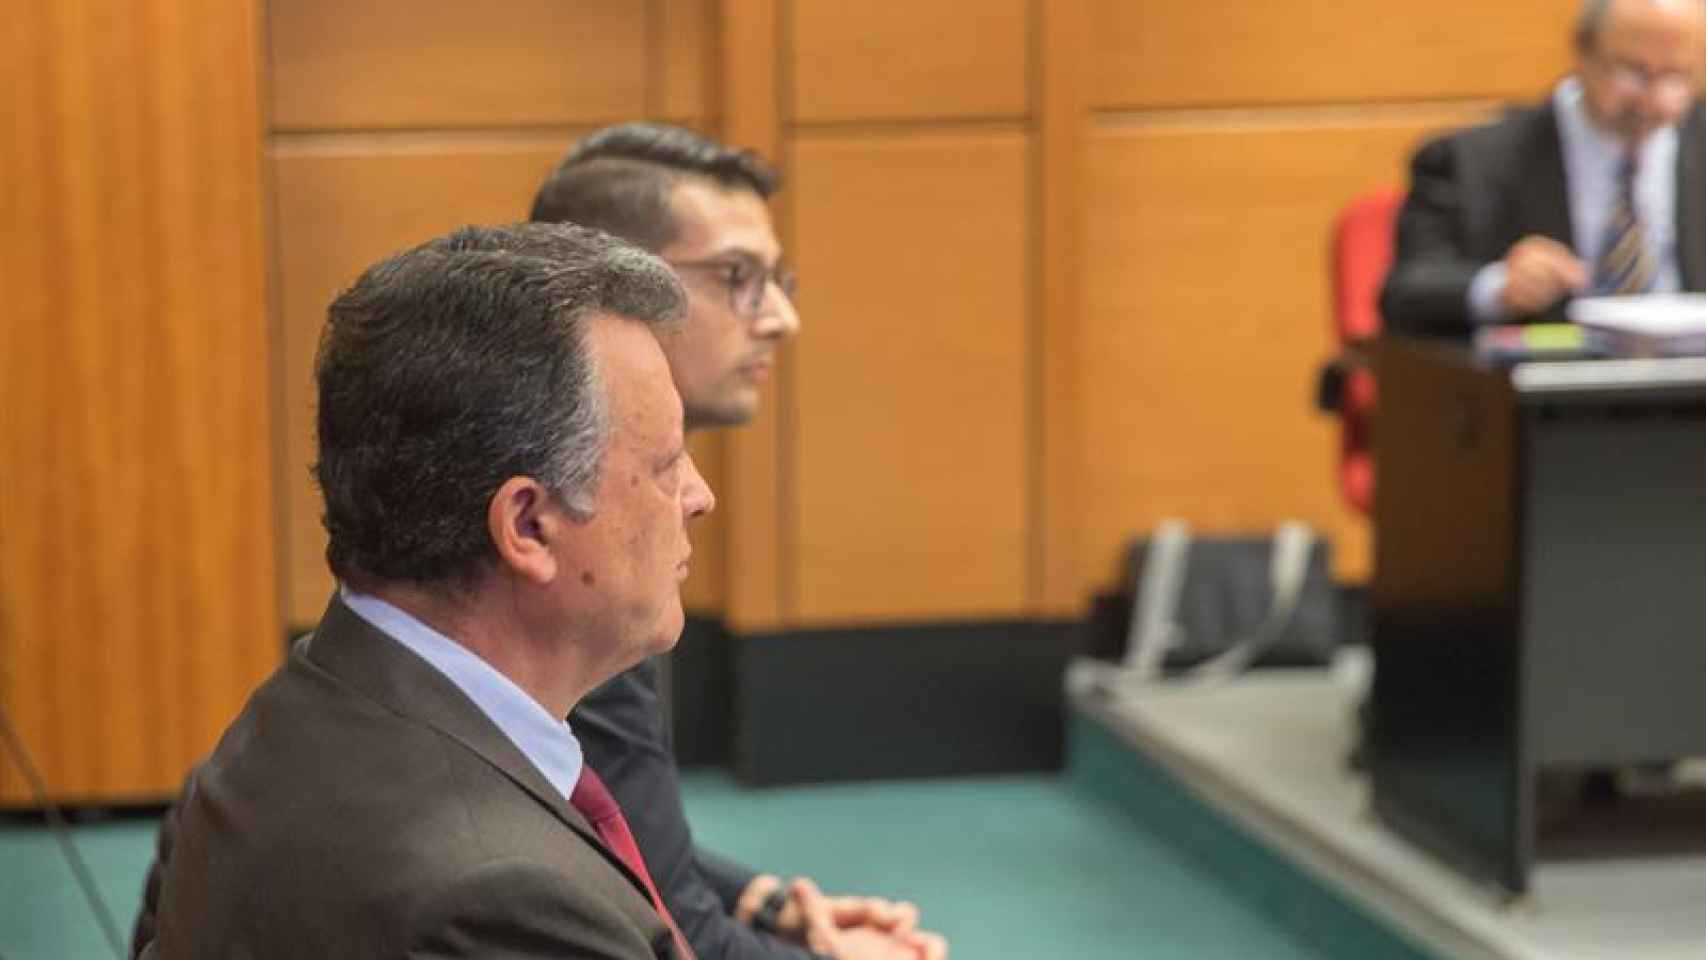 Emilio Titos, director general de Mercedes-Benz junto a su hijo en el juicio.